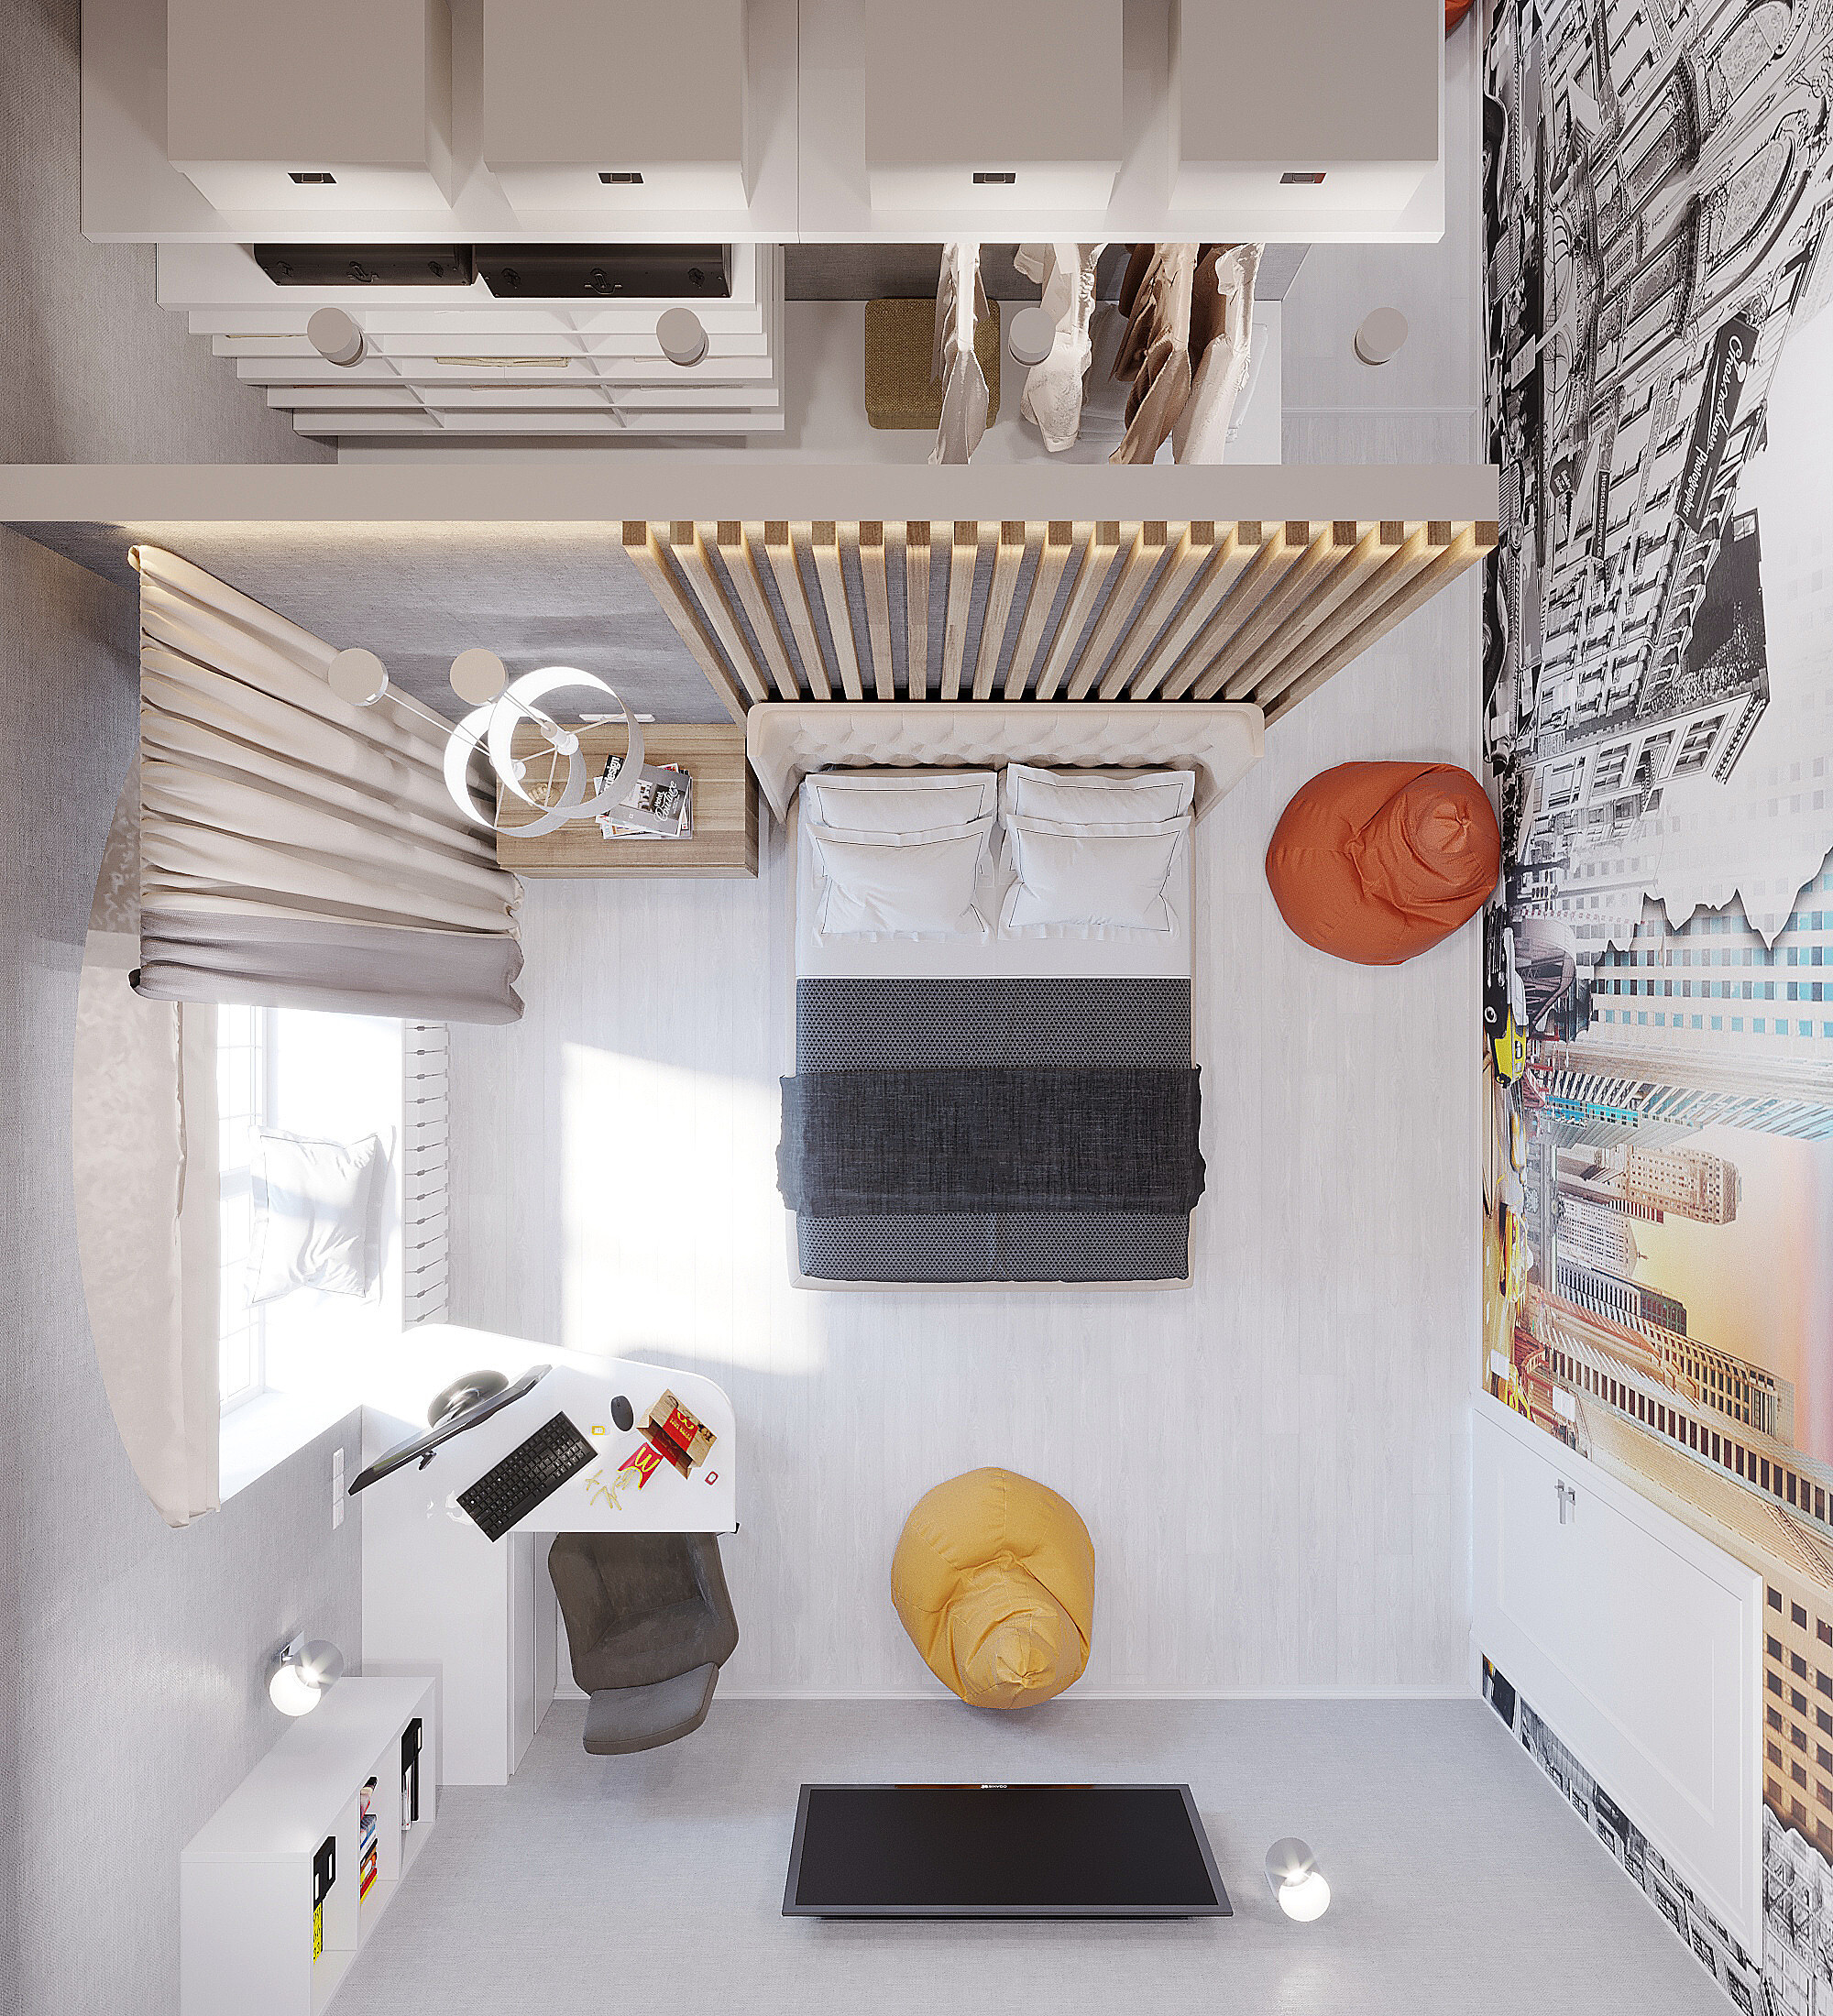 Интерьер кухни c рабочим местом, с антресолью и кроватью под потолком в стиле лофт